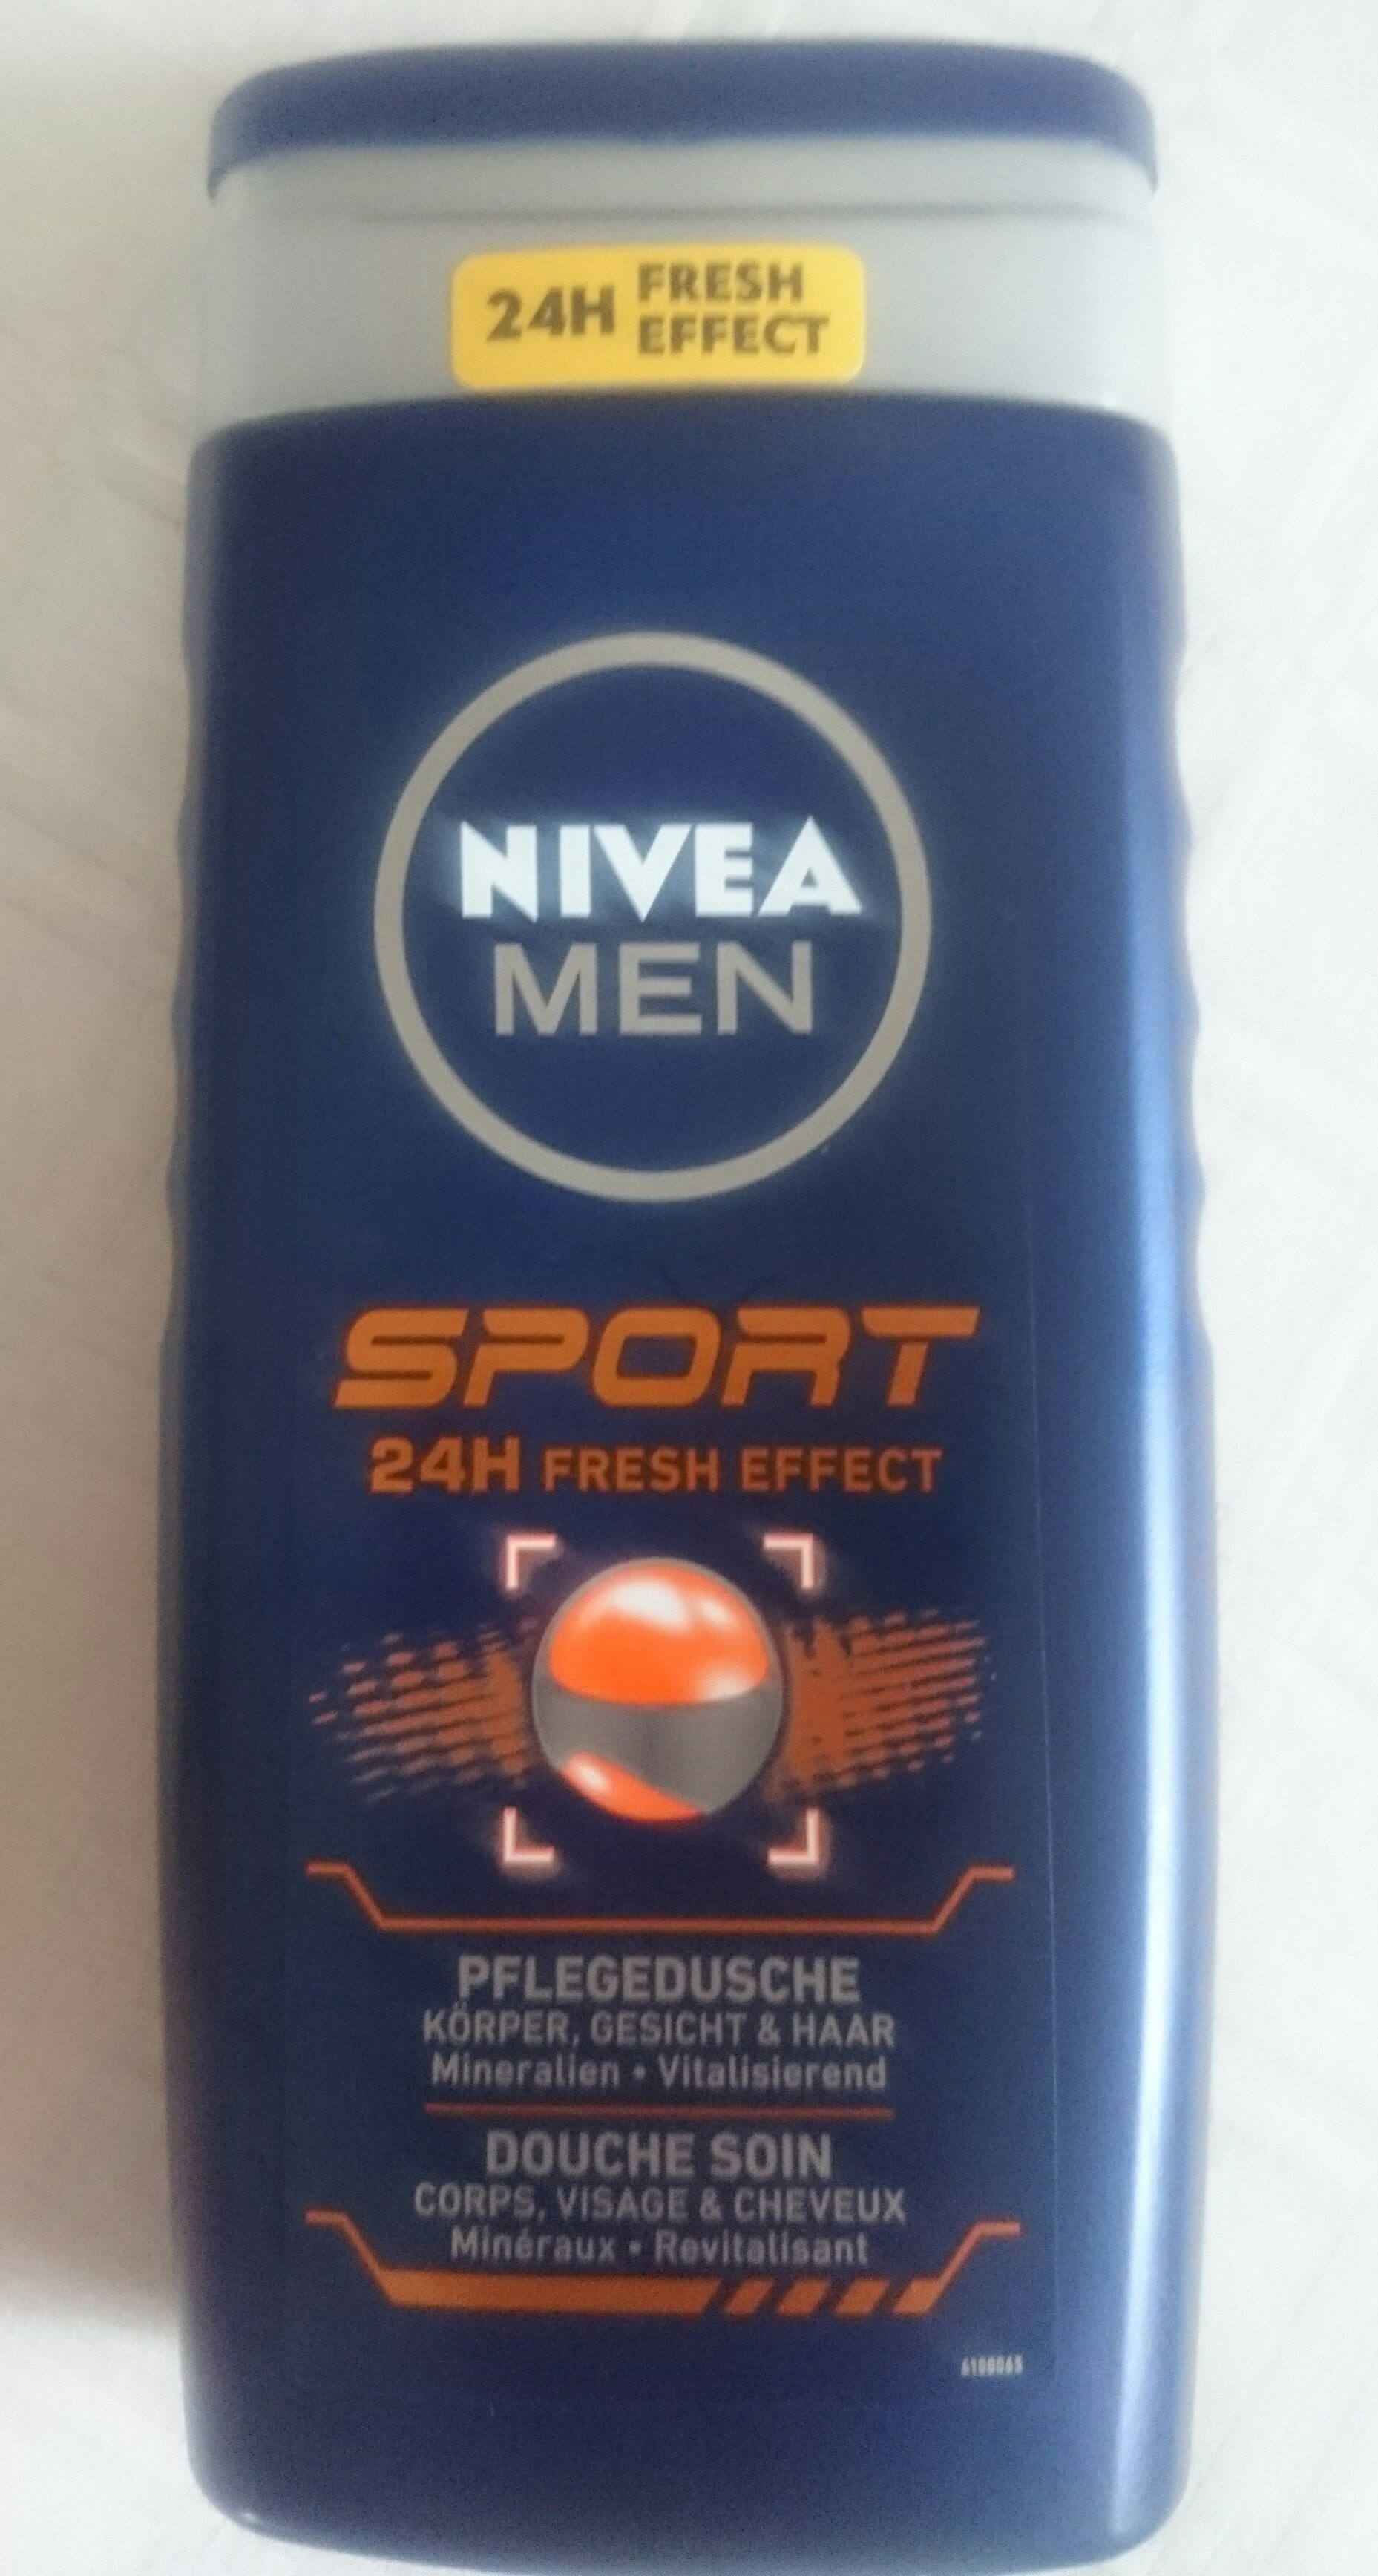 Nivea Men Sport 24H Fresh Effect - Produit - de